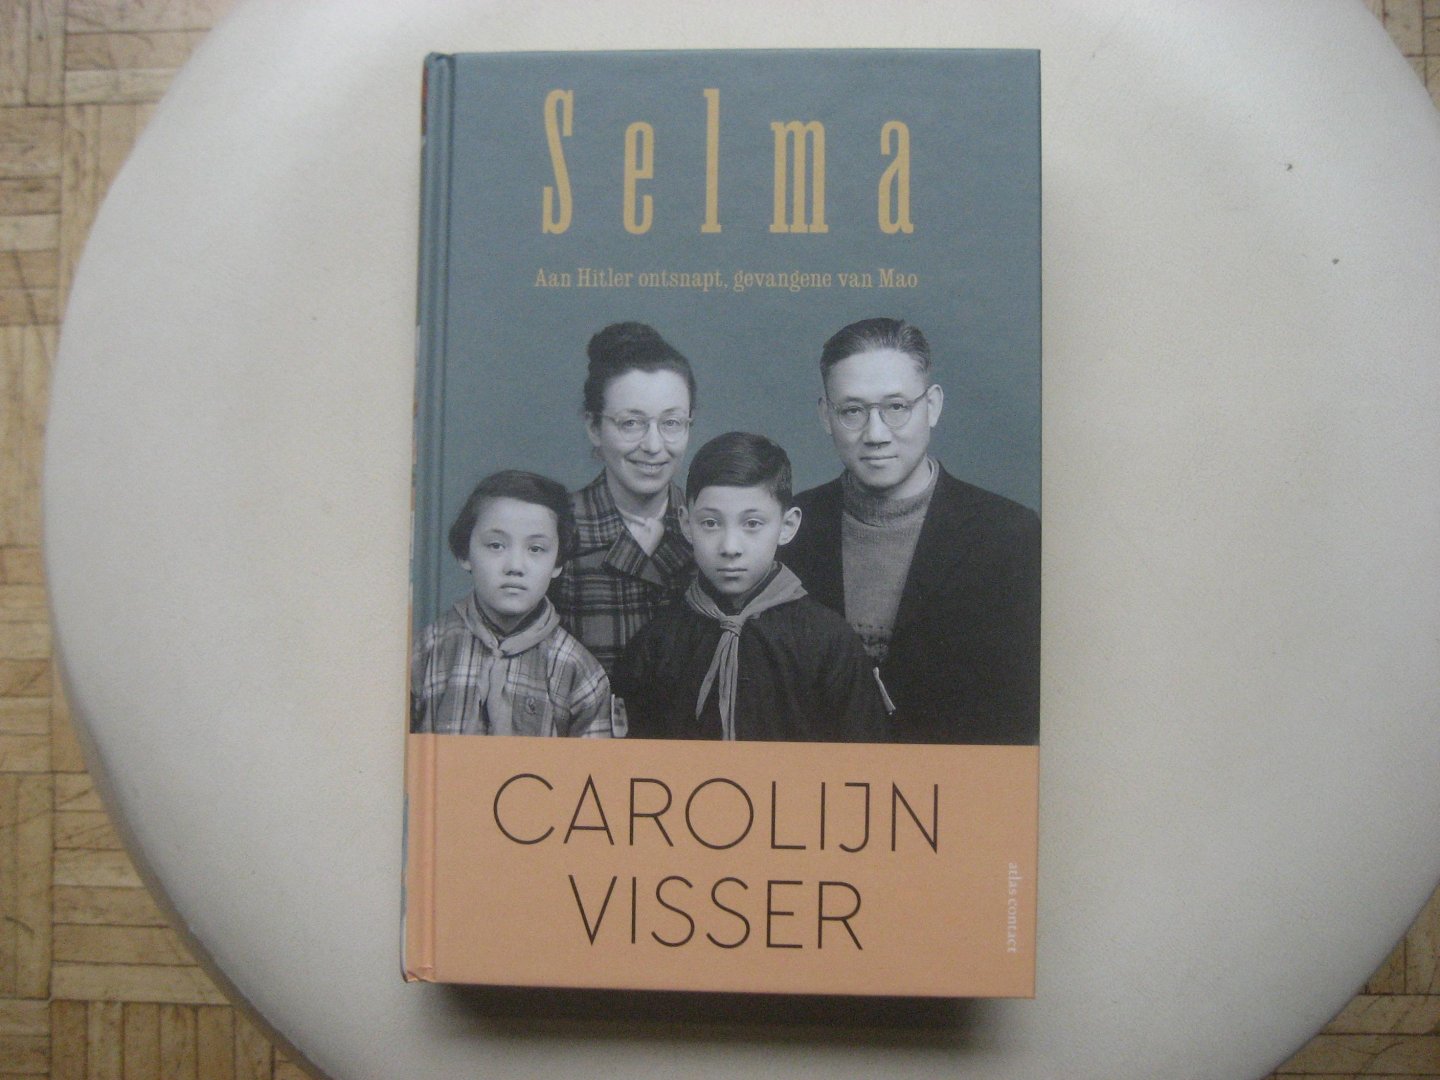 Carolijn Visser - Selma / Aan Hitler ontsnapt, gevangene van Mao